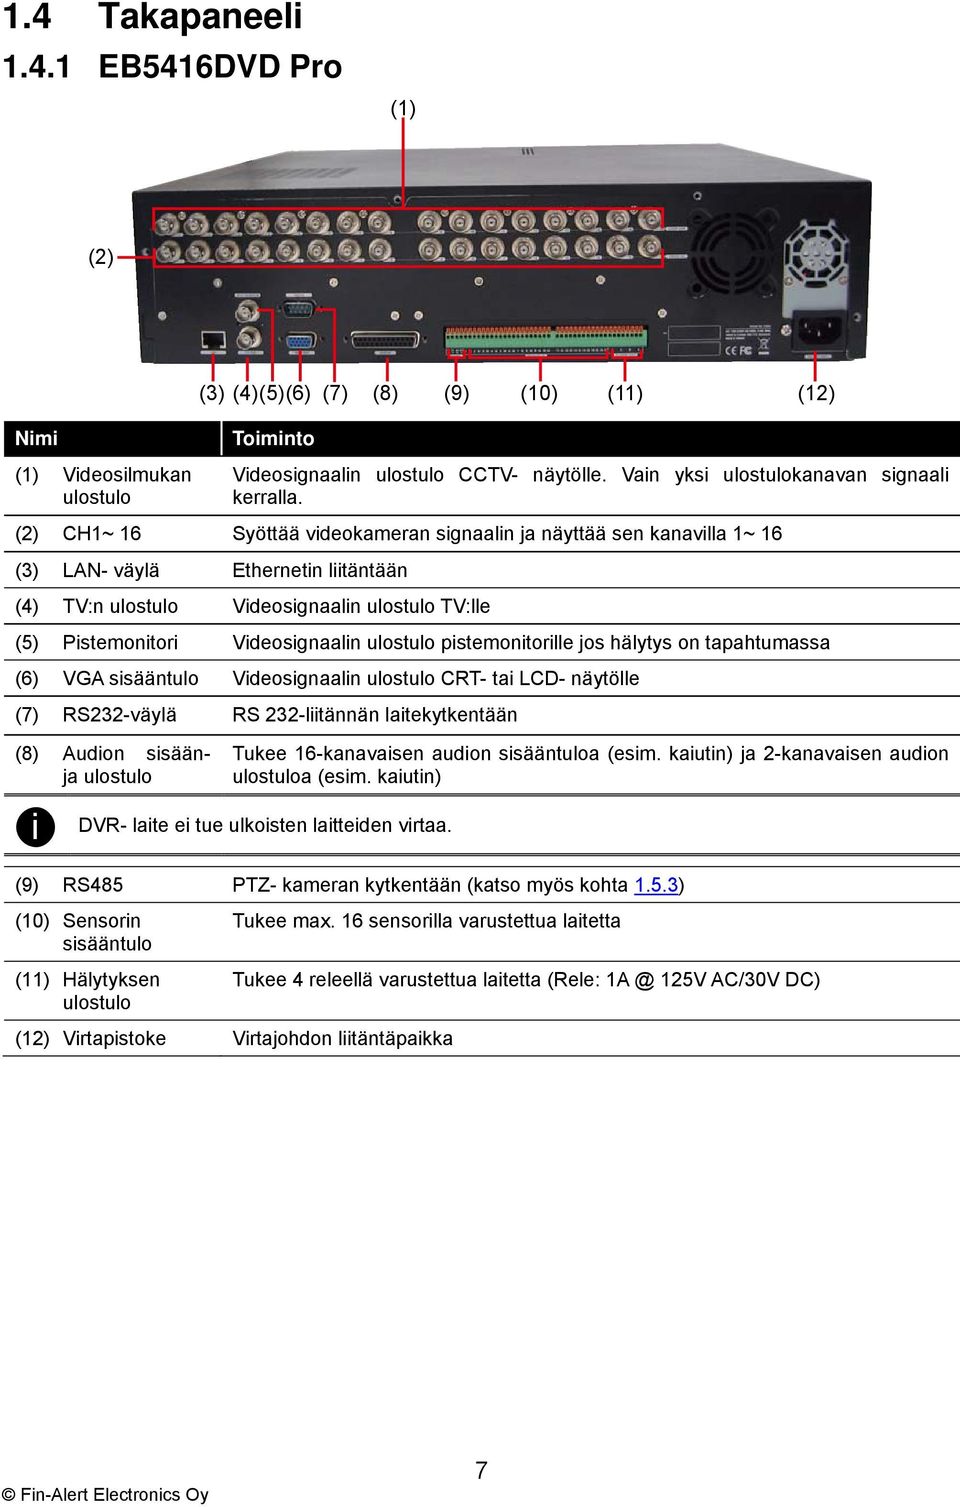 ulostulo pistemonitorille jos hälytys on tapahtumassa (6) VGA sisääntulo Videosignaalin ulostulo CRT- tai LCD- näytölle (7) RS232-väylä RS 232-liitännän laitekytkentään (8) Audion sisäänja ulostulo i